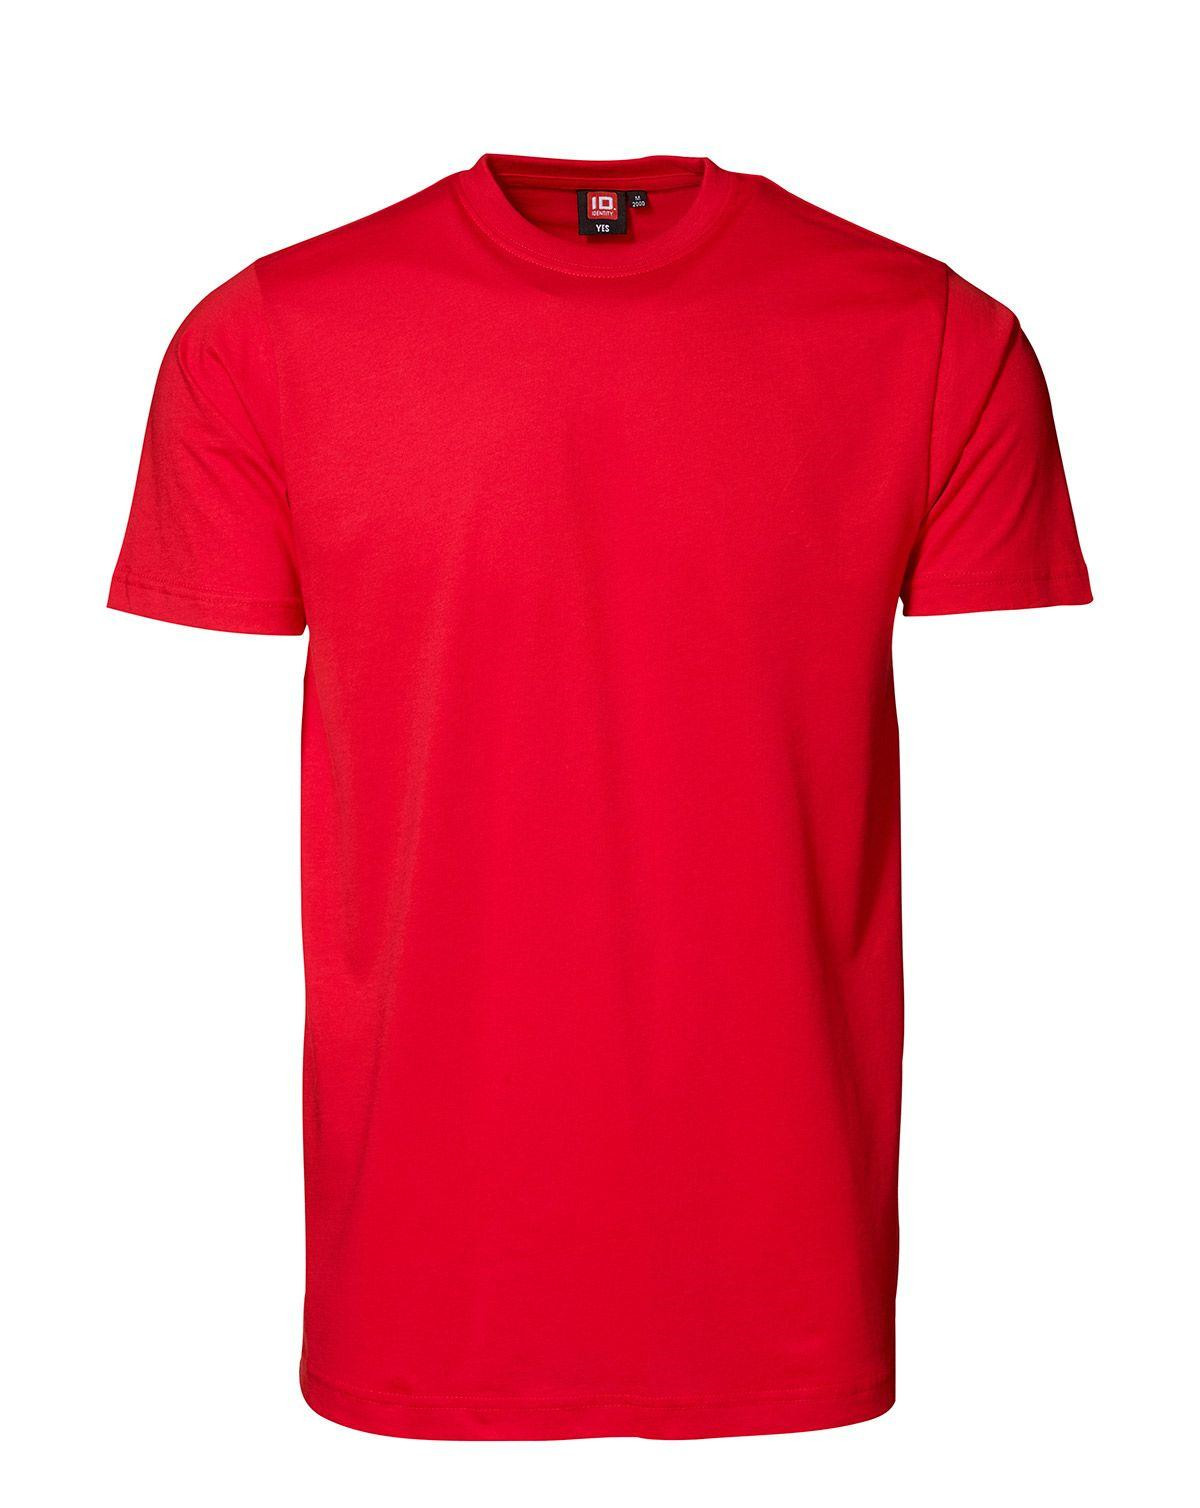 ID YES T-shirt (Rød, M)